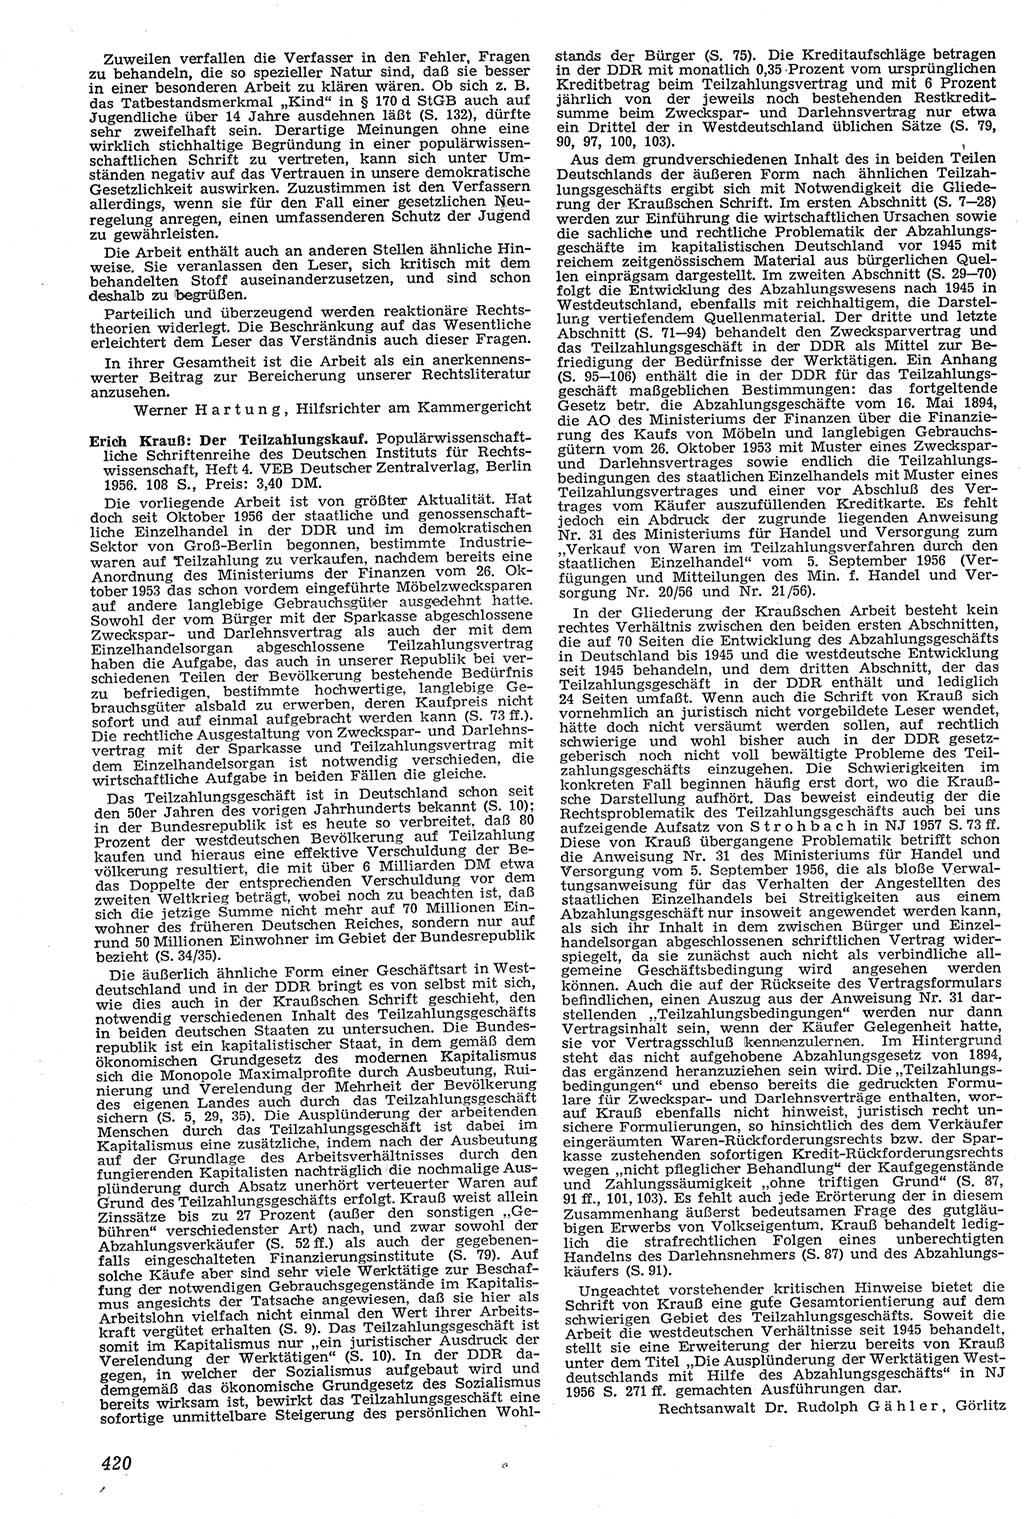 Neue Justiz (NJ), Zeitschrift für Recht und Rechtswissenschaft [Deutsche Demokratische Republik (DDR)], 11. Jahrgang 1957, Seite 420 (NJ DDR 1957, S. 420)